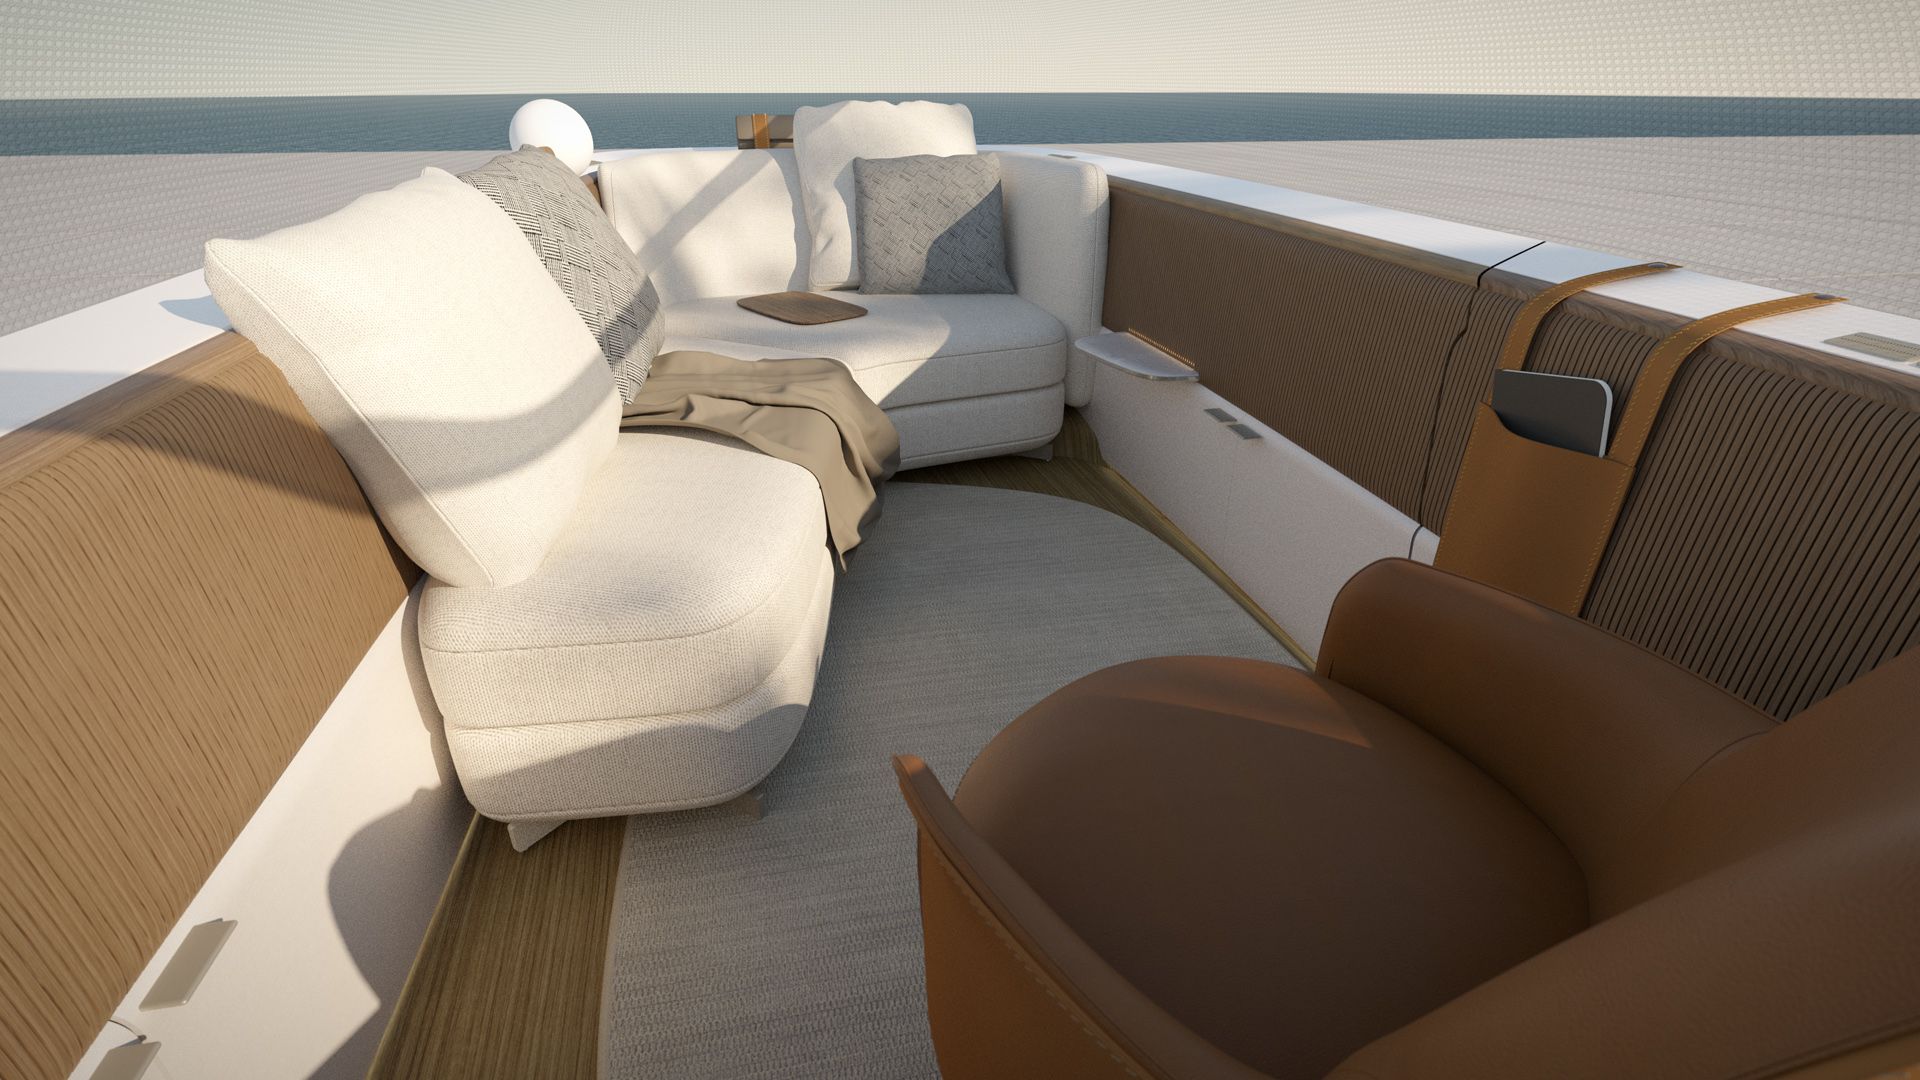 Il progetto degli interni di Poliform per Audi urbansphere concept mostra un abitaco-lo accogliente con diversi particolari dei sedili.